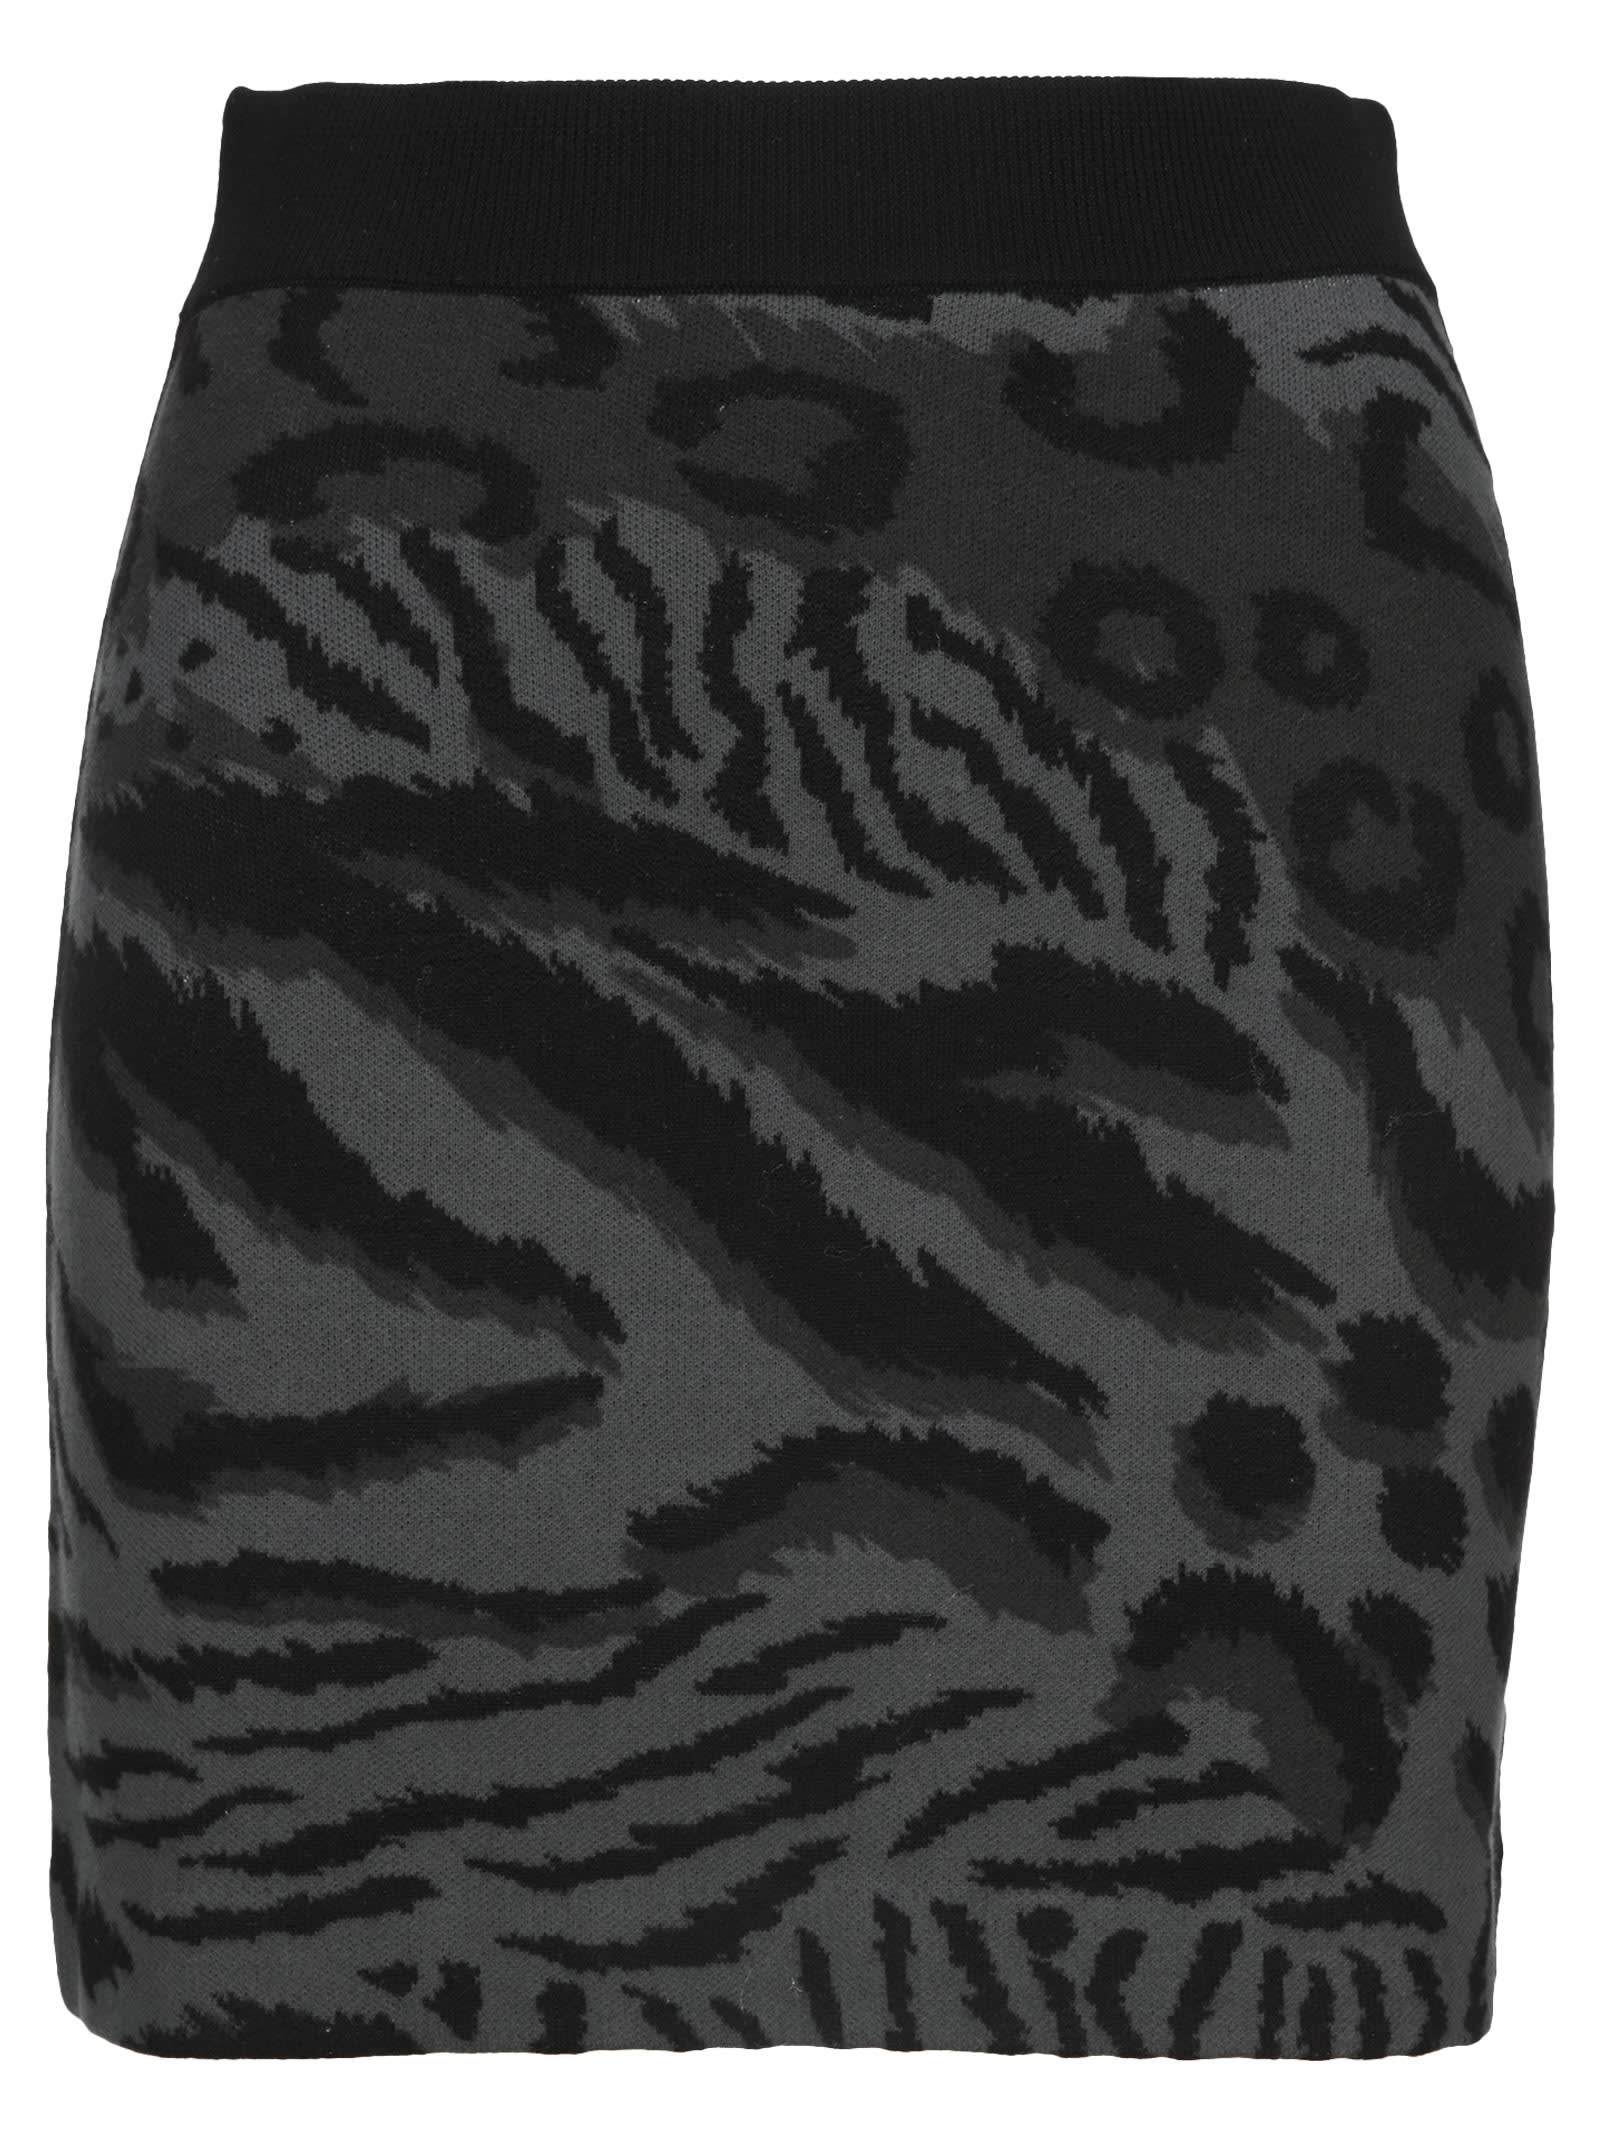 Kenzo cheetah Leopard Merino Wool Mini Skirt